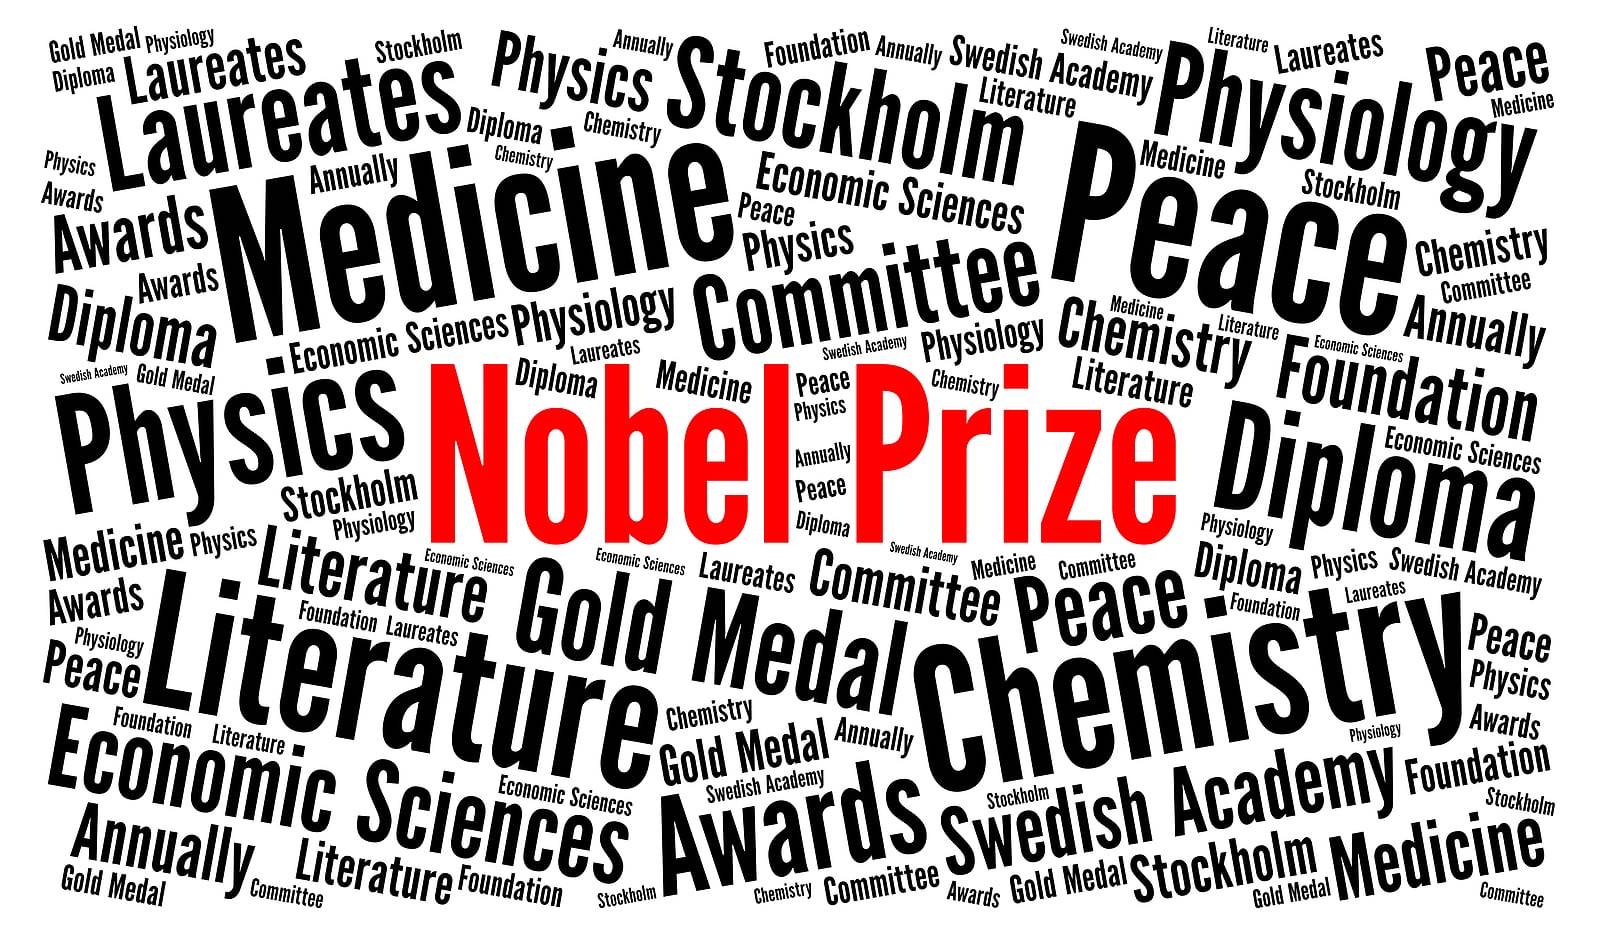 Bob Dylan Wins A Nobel Prize!